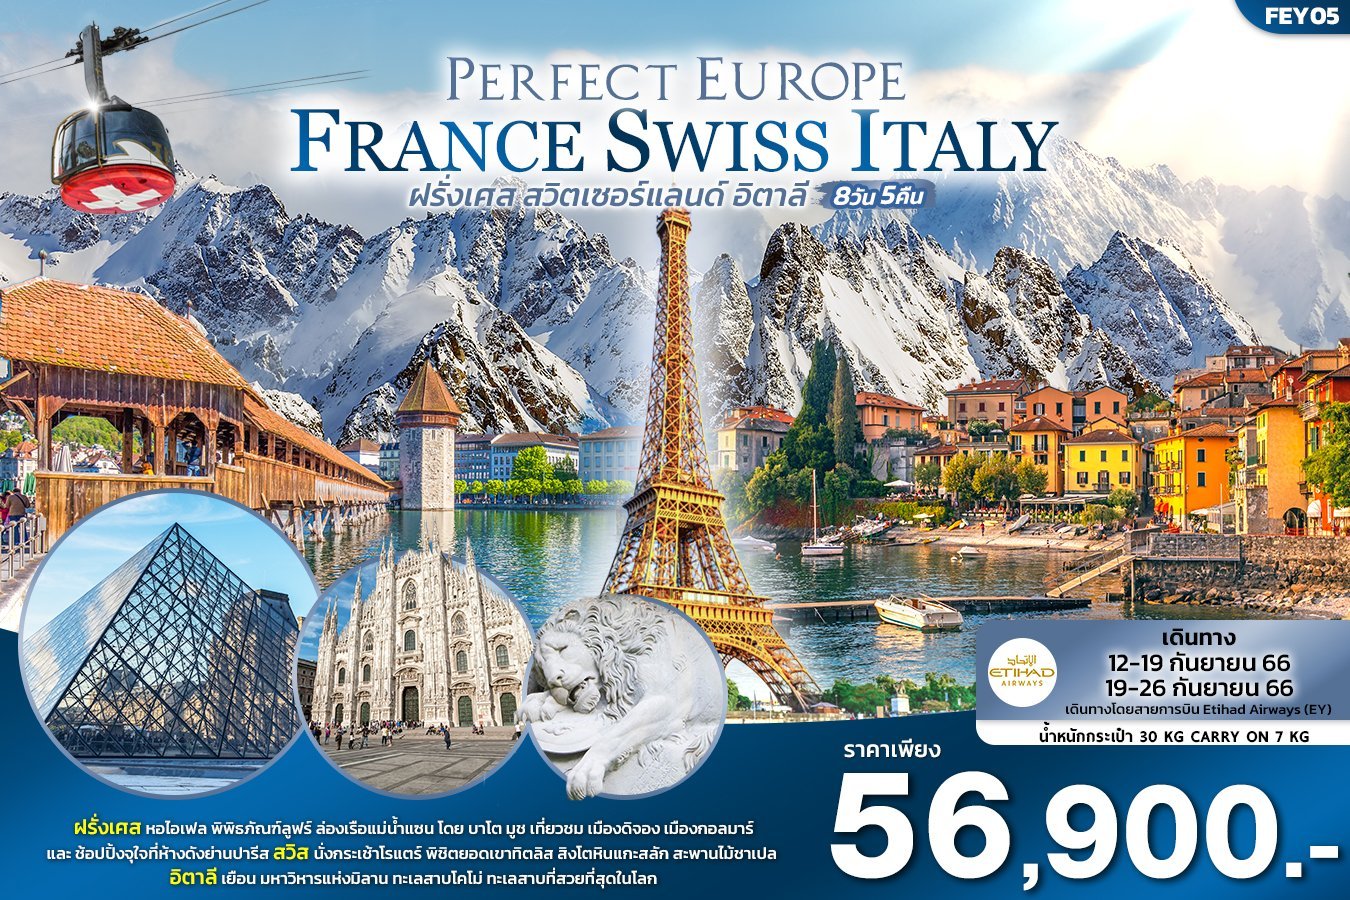 ทัวร์ยุโรป PERFECT EUROPE ฝรั่งเศส สวิตเซอร์แลนด์ อิตาลี 8วัน 5คืน EY(IT)